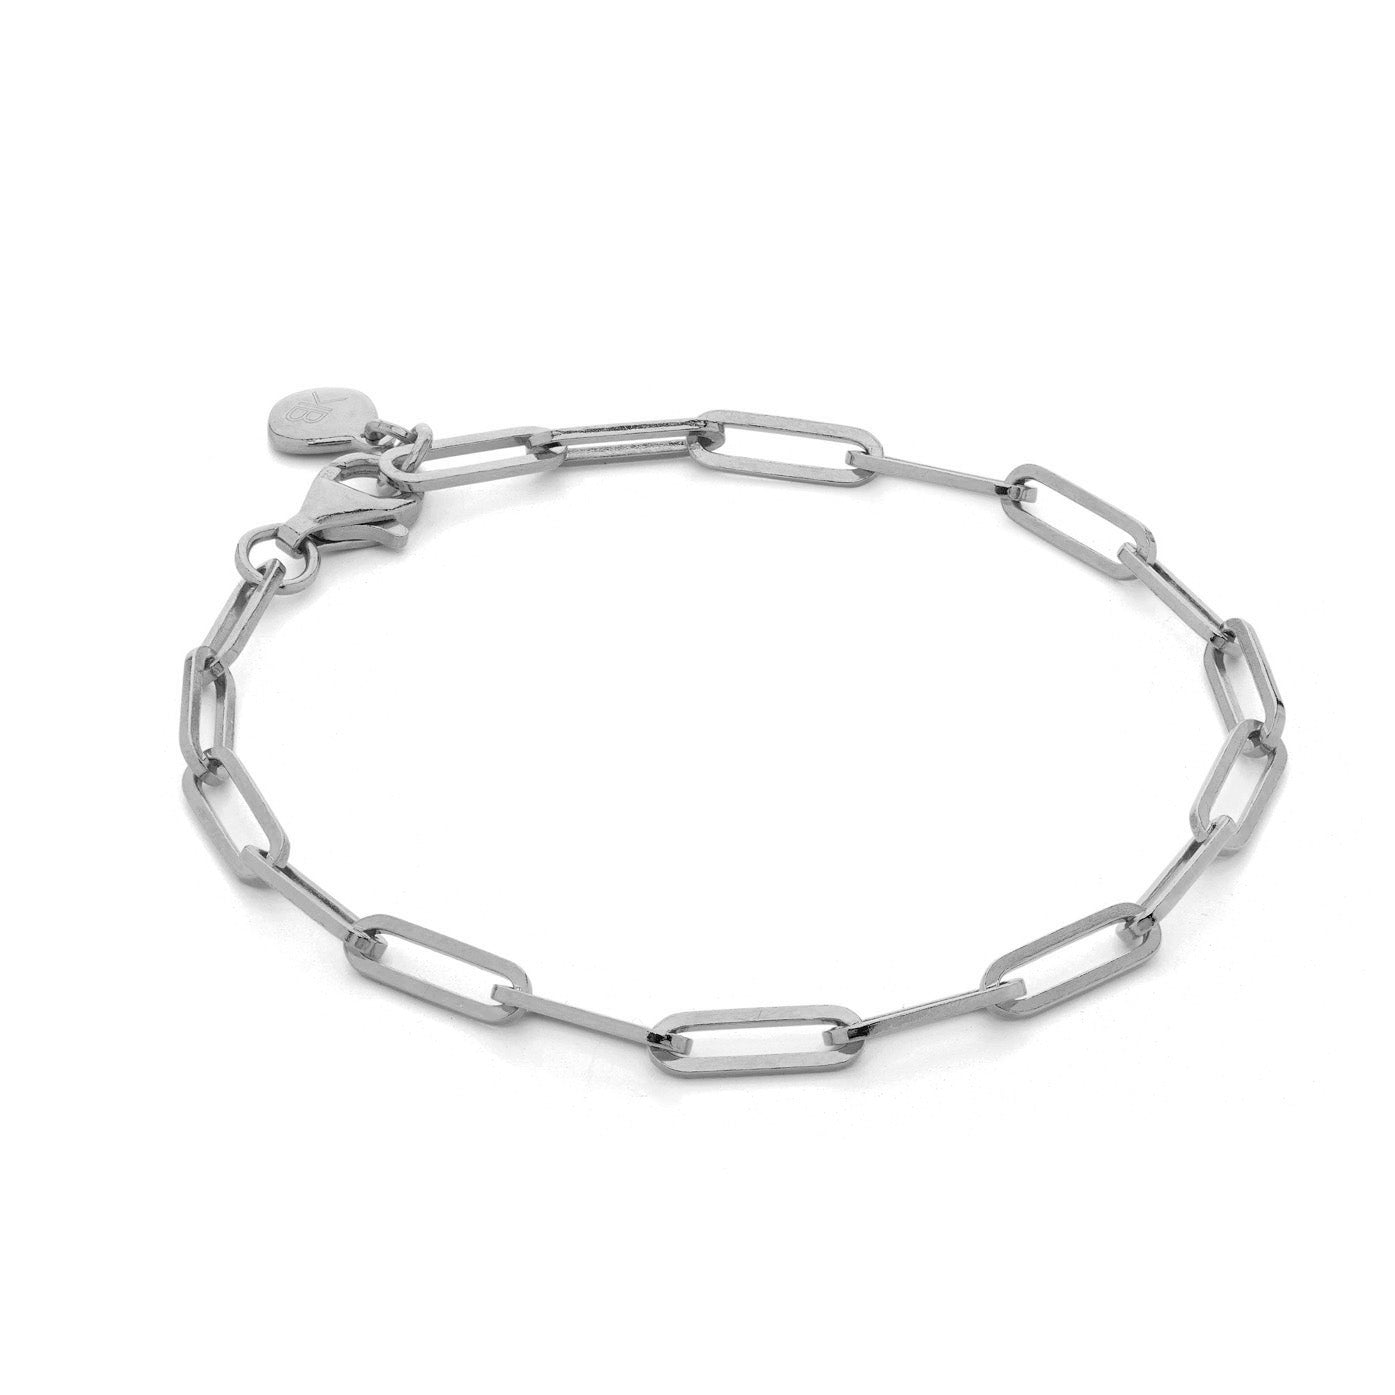 Medium Link Bracelet, Sterling Silver